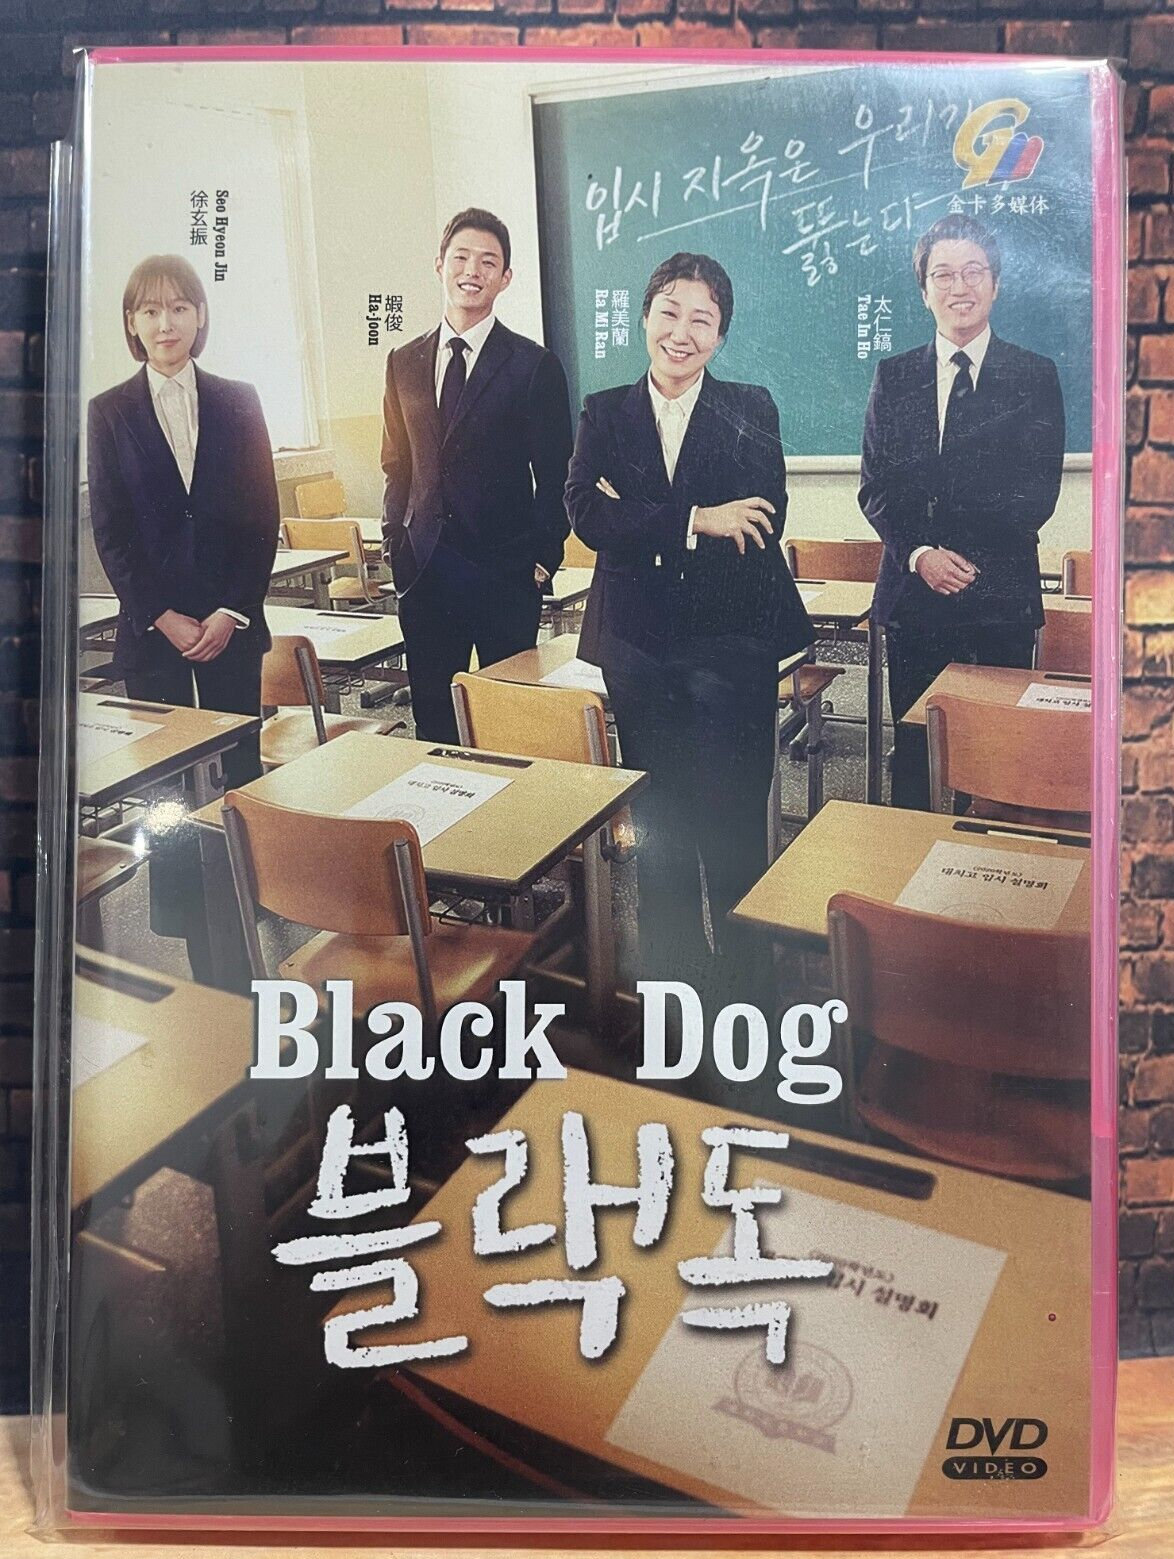 STRANGERS FROM HELL Korean DVD - TV Series (NTSC) – Korean Drama DVD